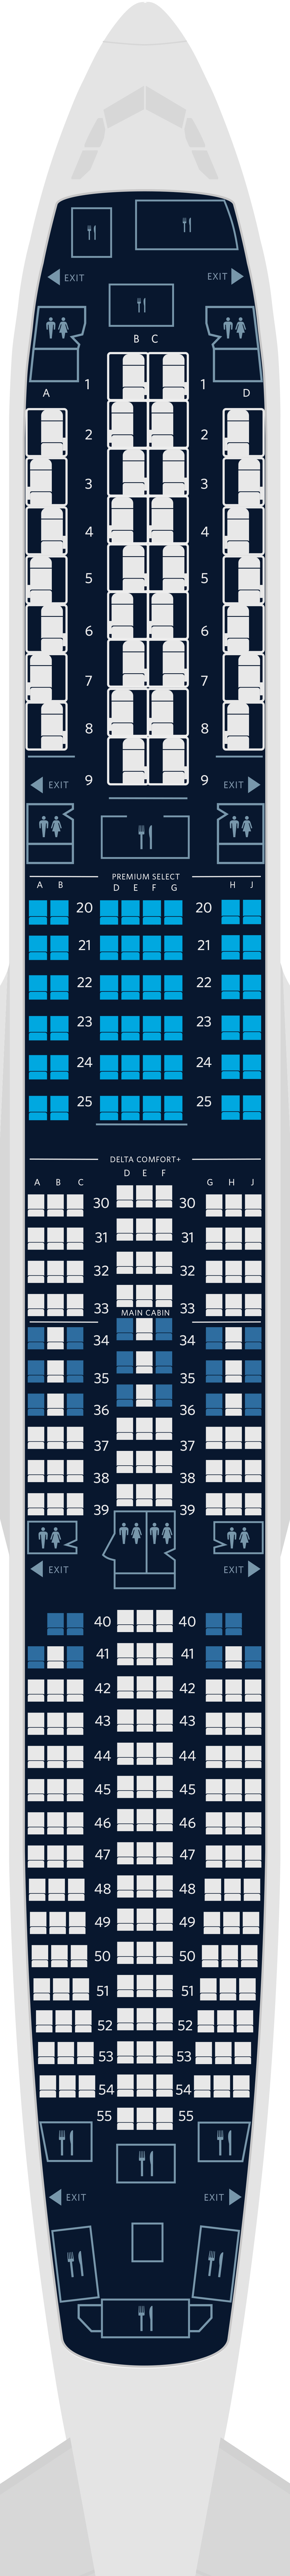  Mapa de asientos del Airbus A350-900 de 4 cabinas